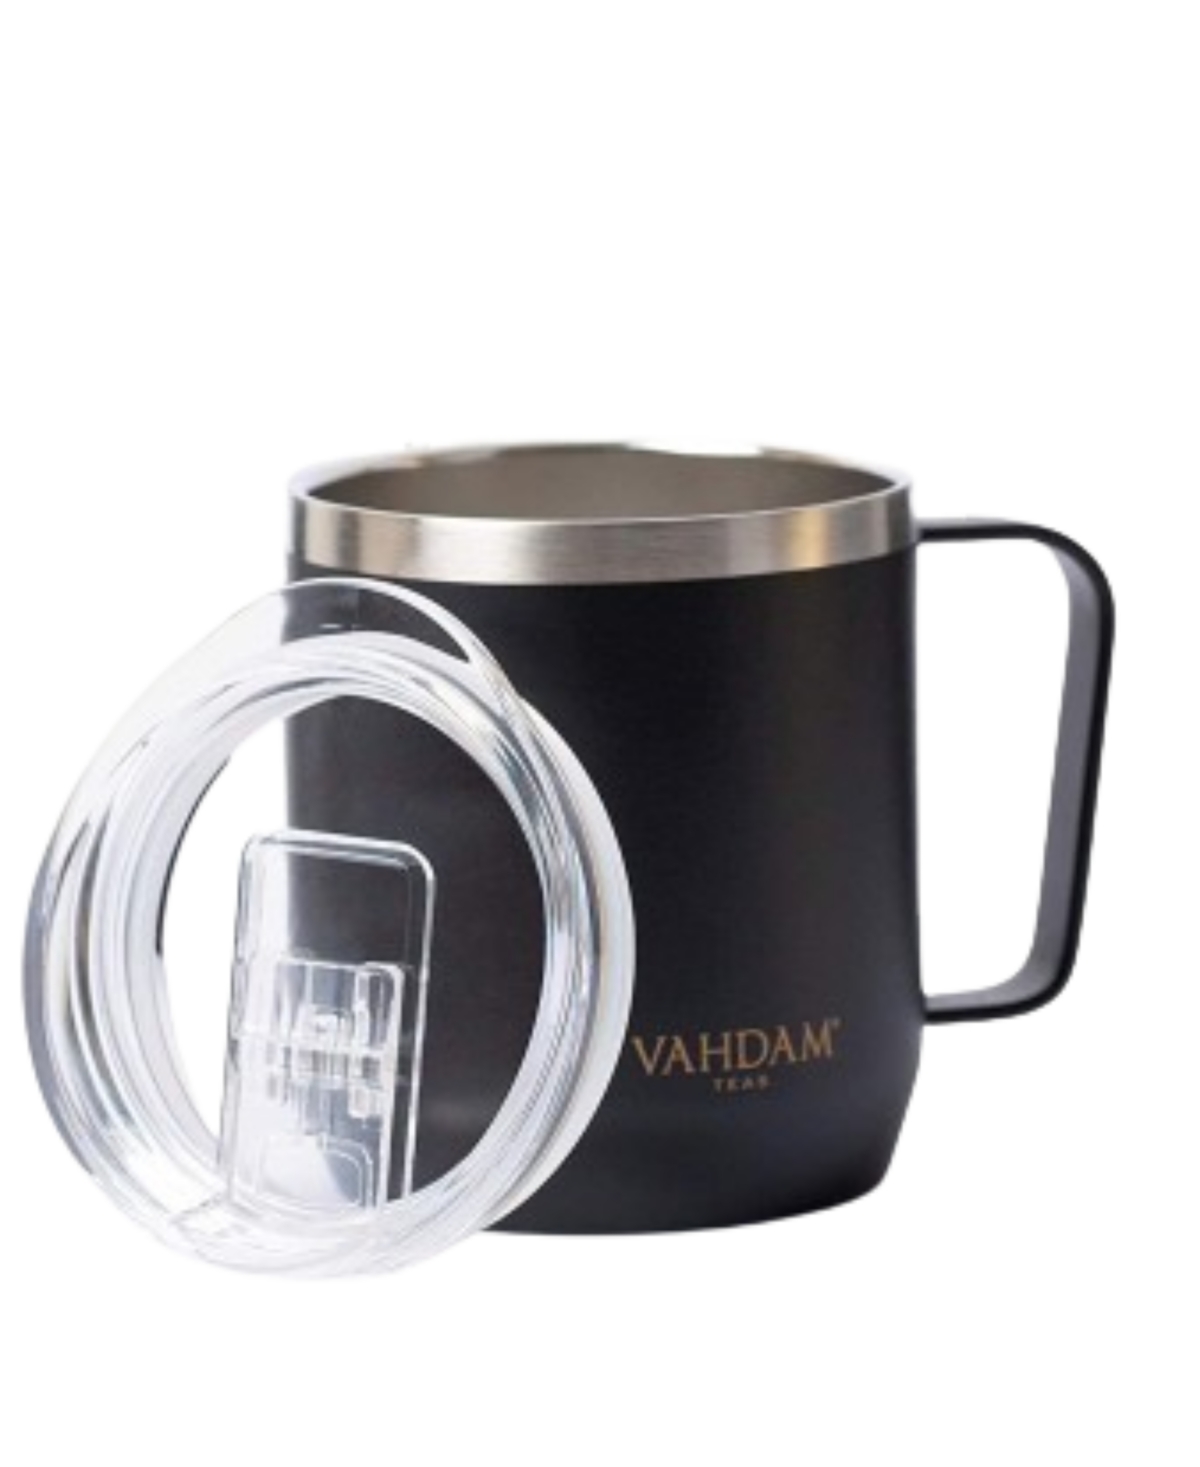 Vahdam Teas Black Drift Mug, 300 ml